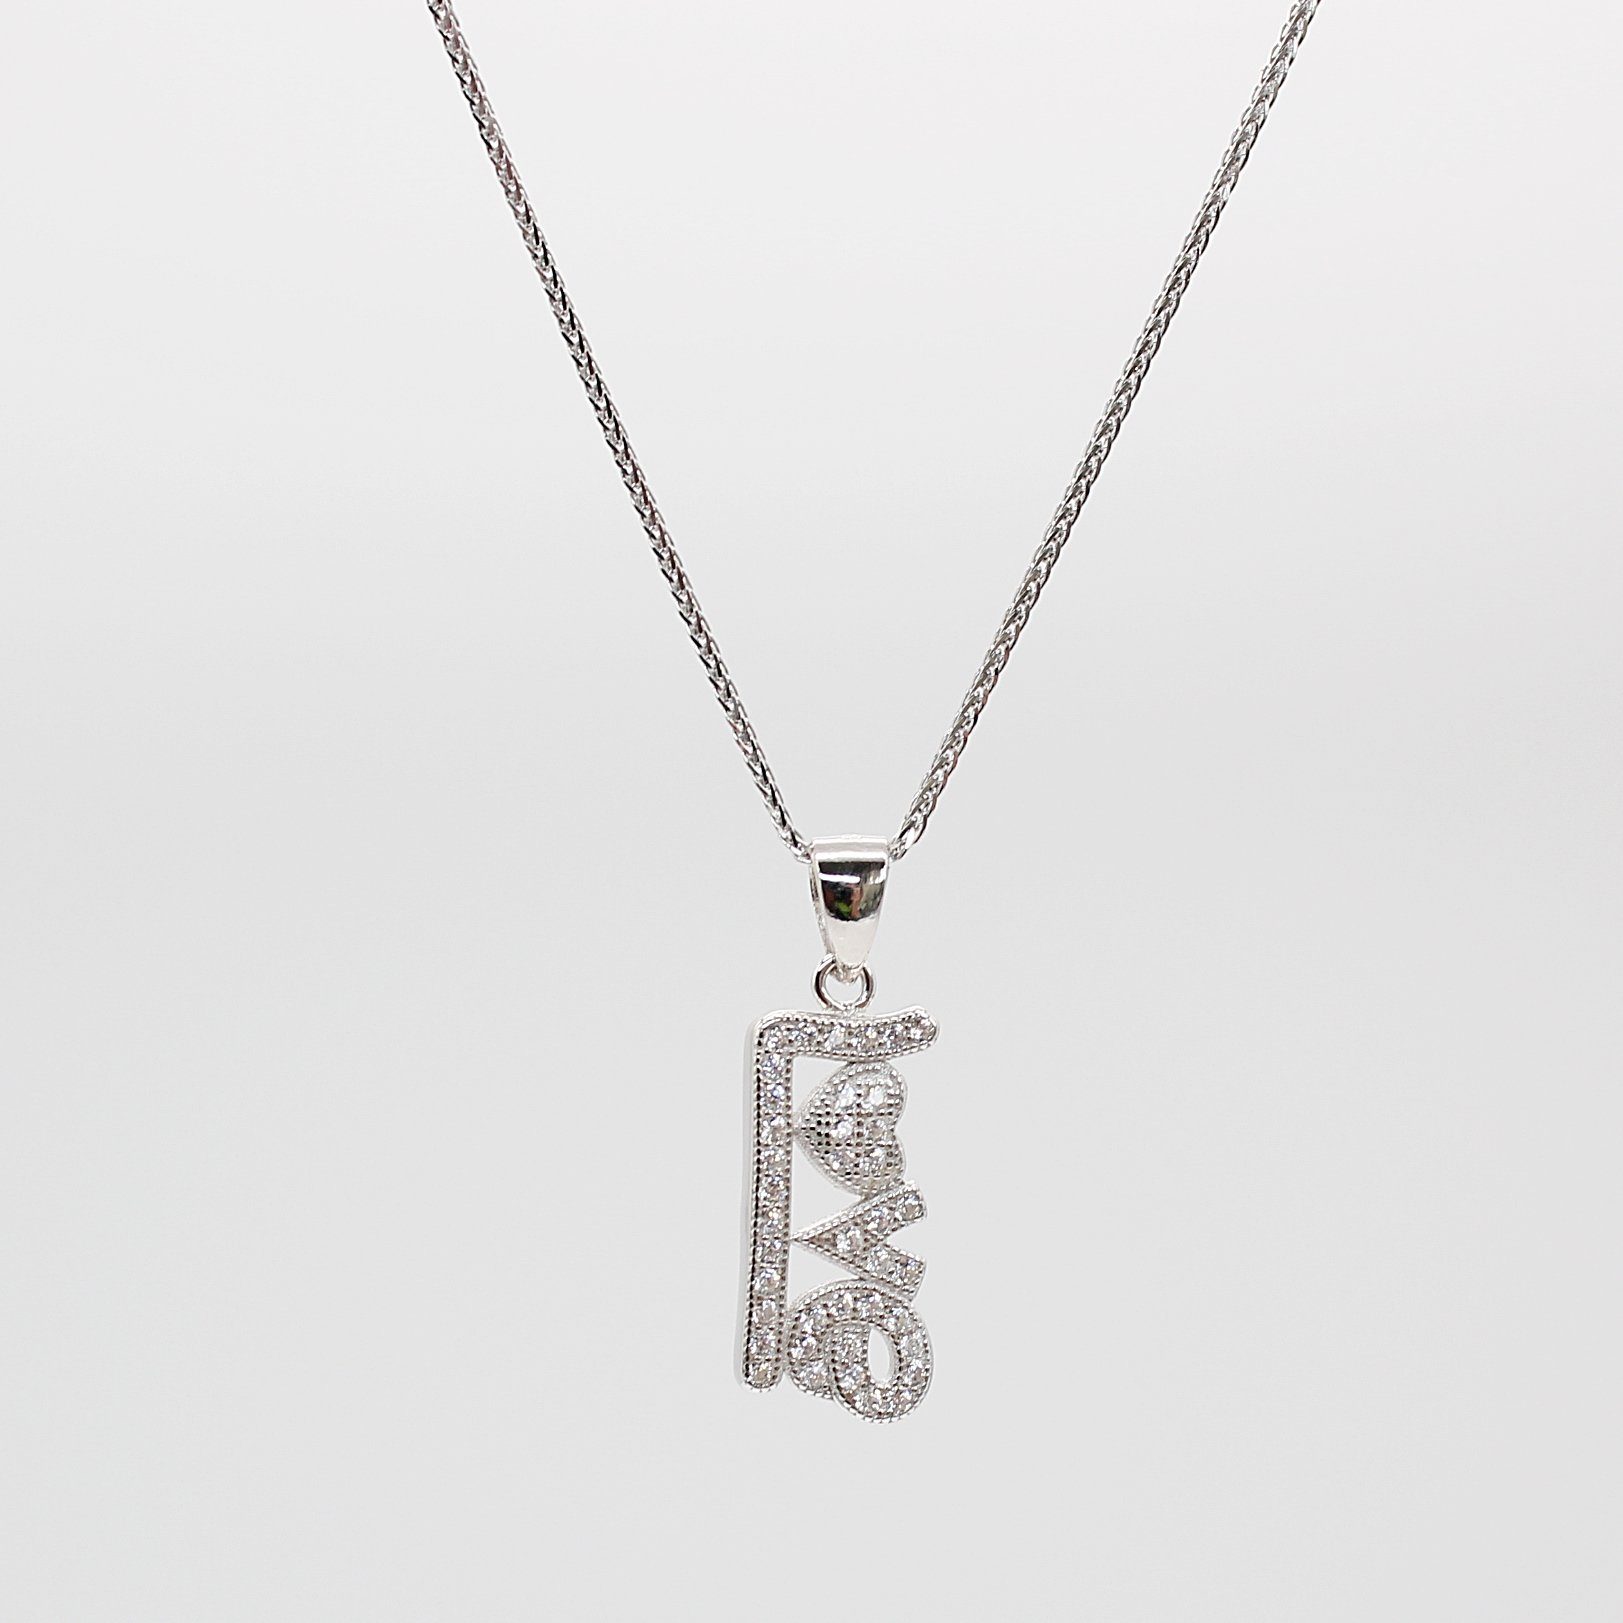 ELLAWIL Silberkette Kette mit Love Inschrift Anhänger Damen Zirkonia Halskette Mädchen (Kettenlänge 45 cm, Sterling Silber 925), inklusive Geschenkschachtel